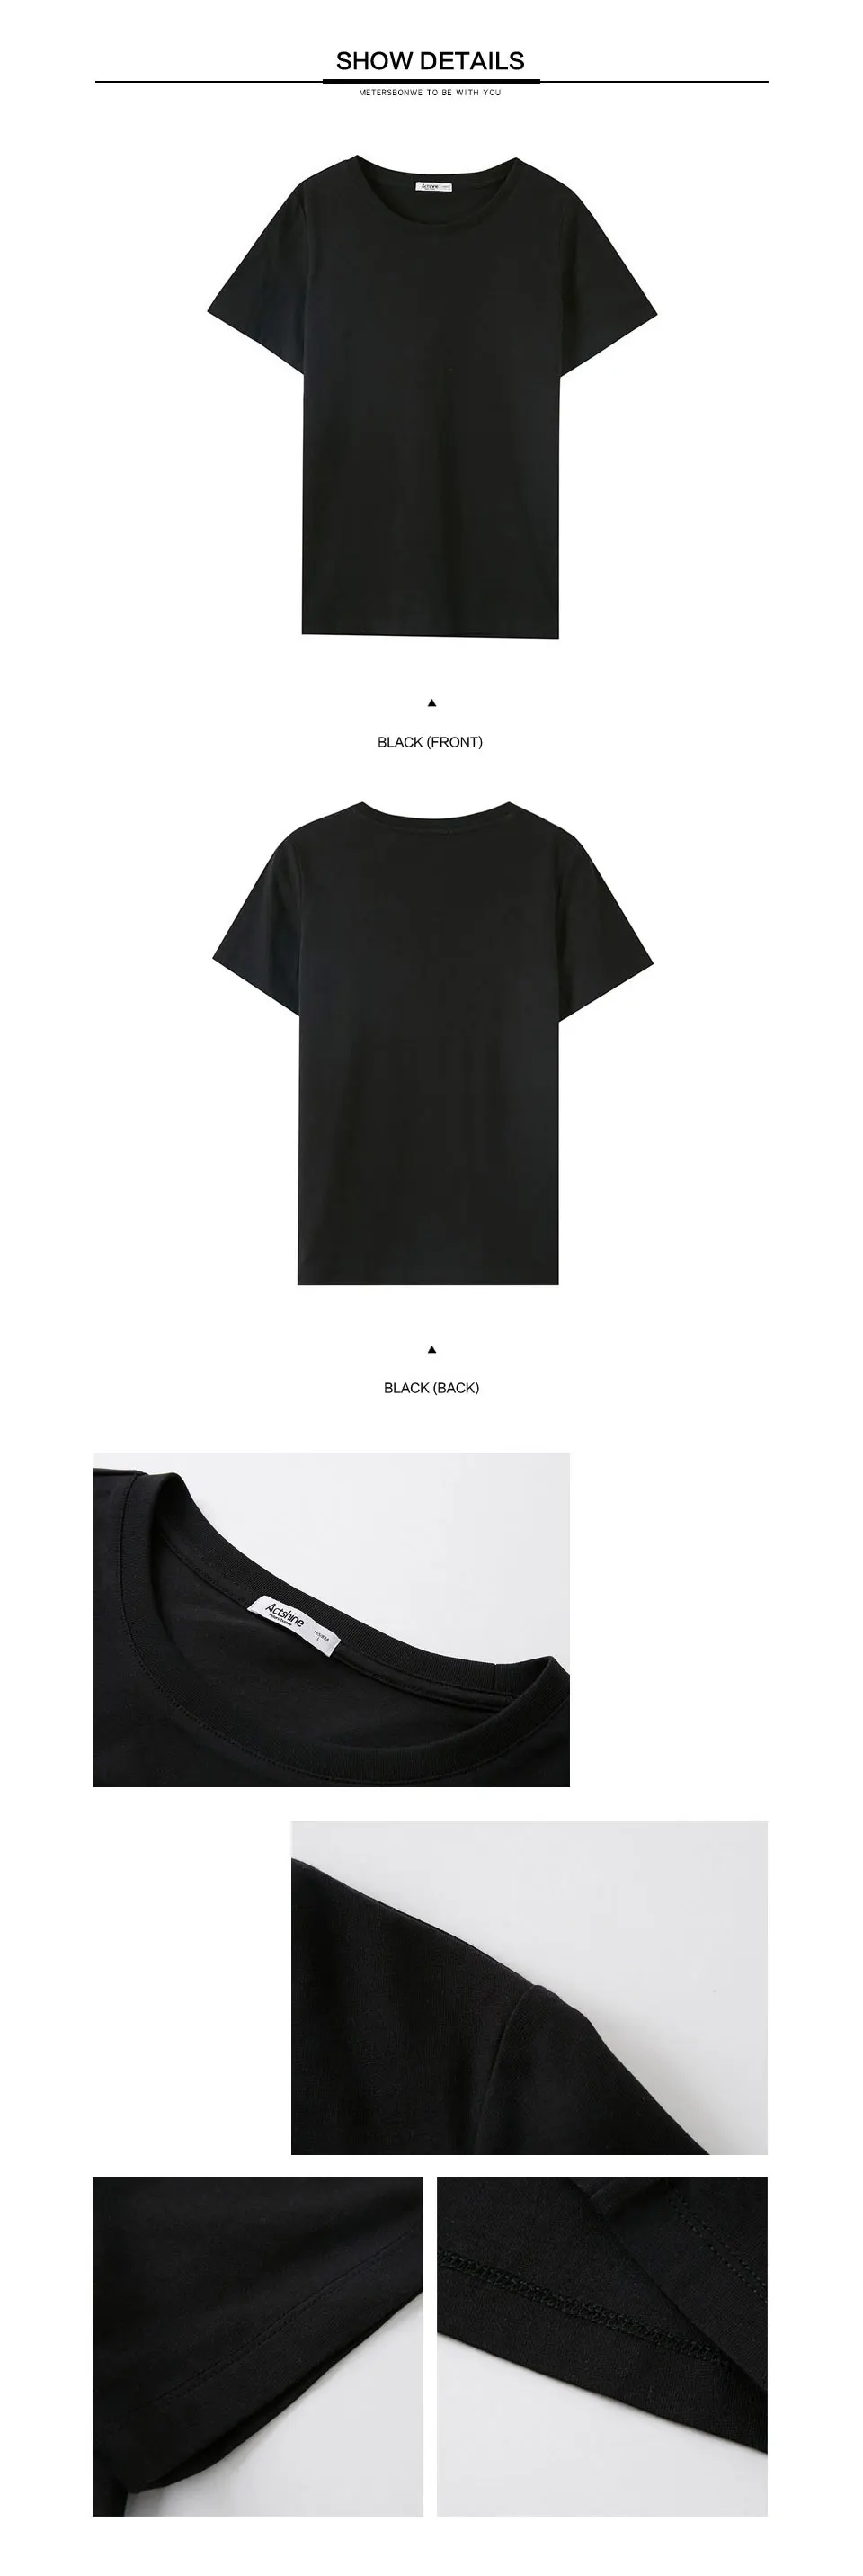 Metersbonwe хлопок Harajuku эстетика футболка сплошной цвет короткий рукав Топы И Футболки модные повседневные парные футболки